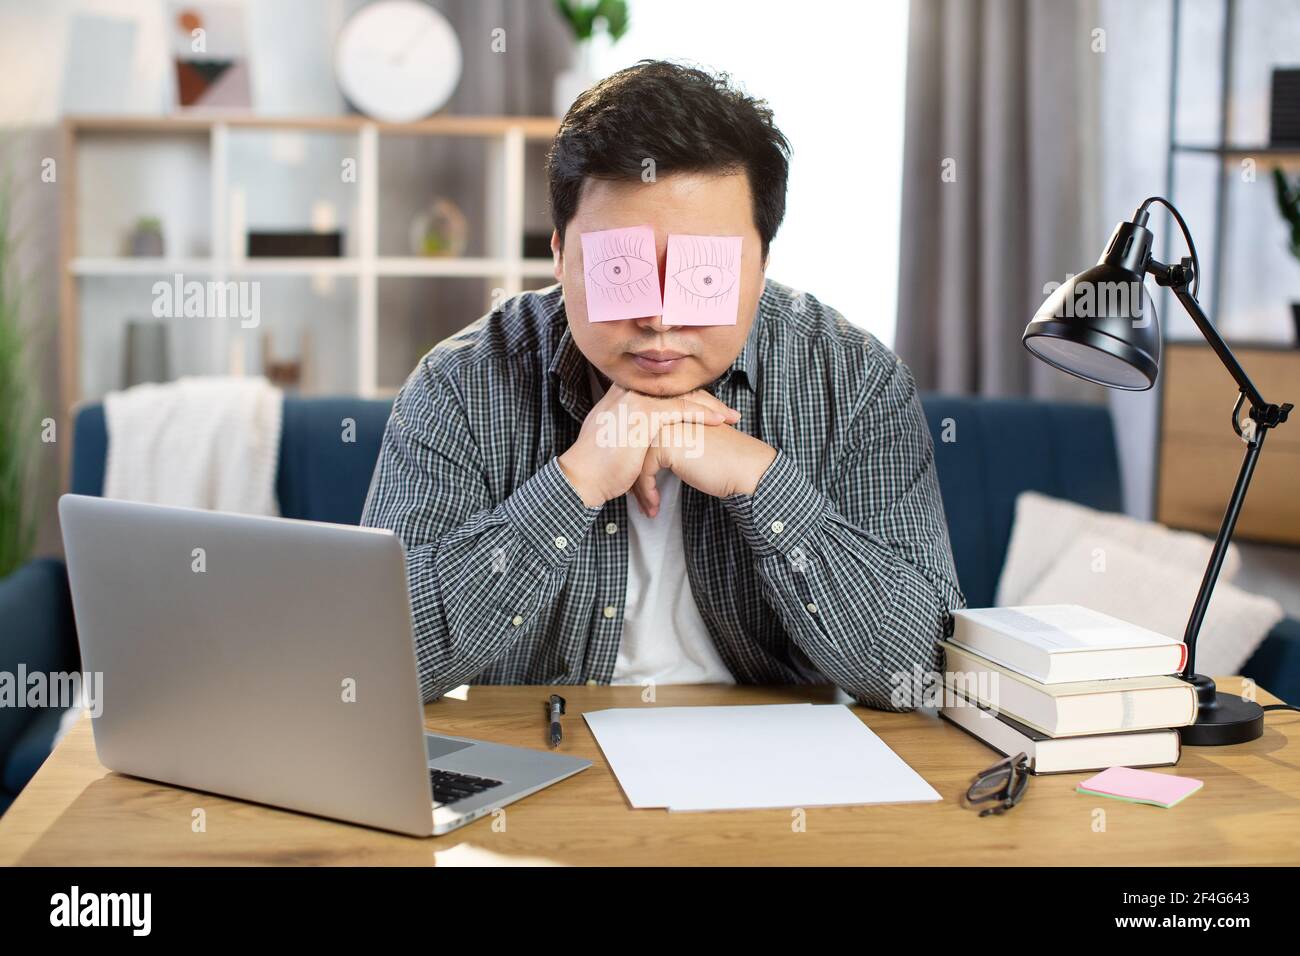 Müde asiatische Geschäftsmann schlafen am Arbeitsplatz mit gefälschten  Augen auf Papier Aufkleber gemalt bedeckt seine Augen. Junger Mann sitzt am  Tisch mit Laptop und lehnt sich an die Hände. Überarbeiteter Begriff  Stockfotografie -